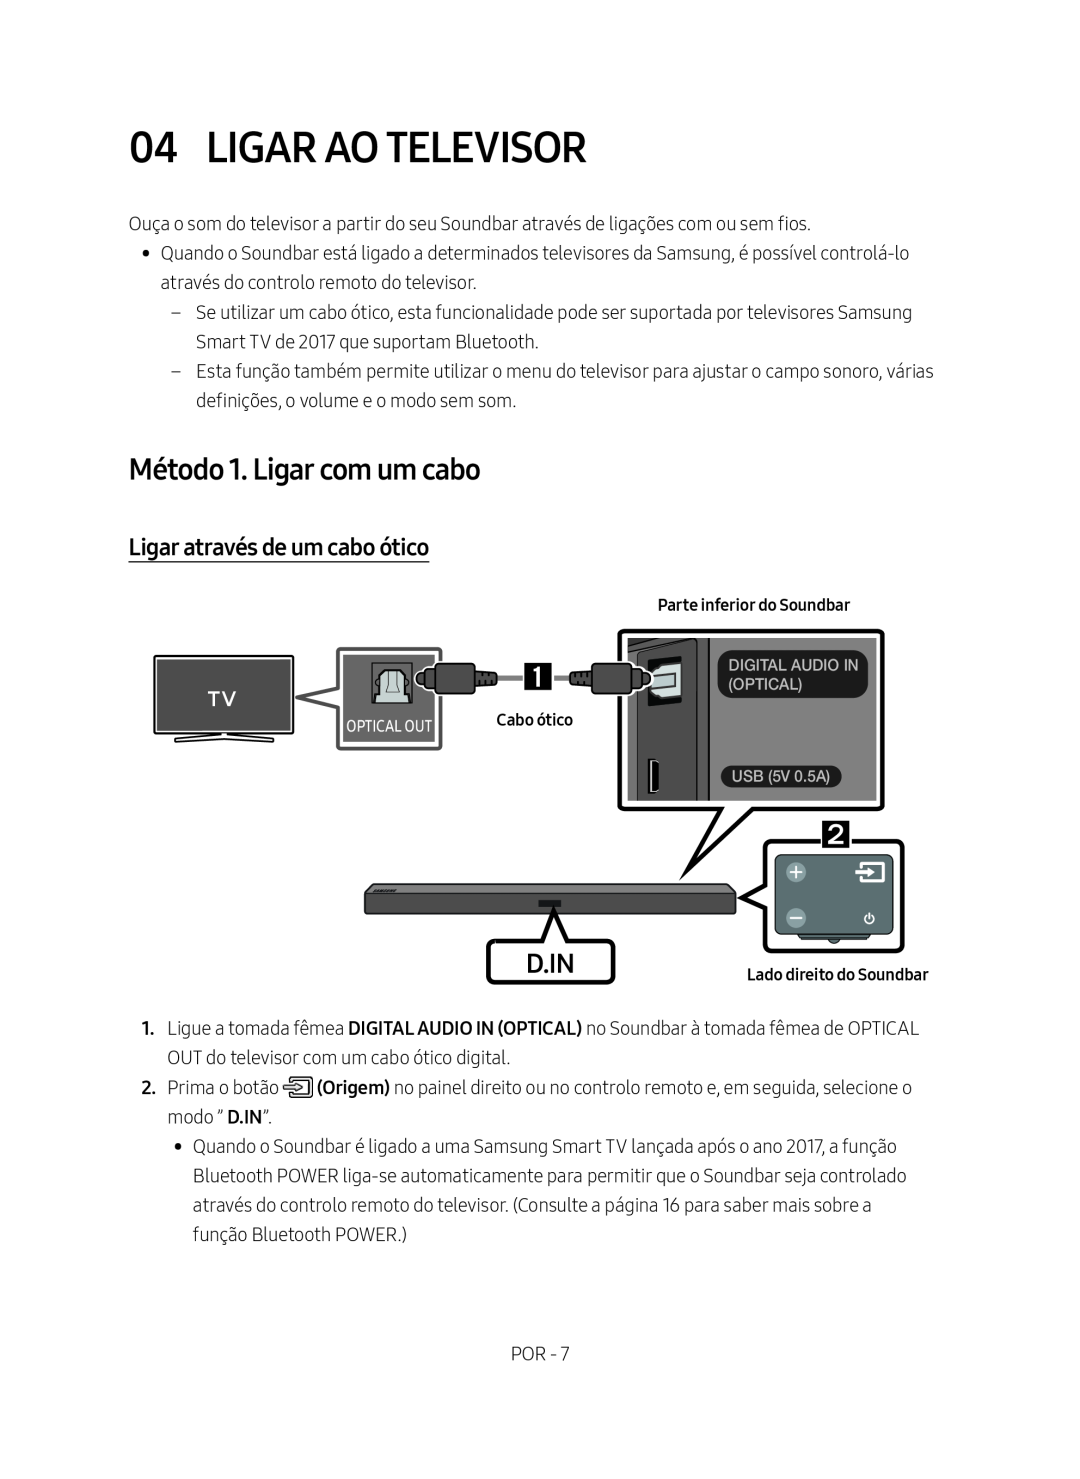 Samsung HW-M450/ZF, HW-M450/EN manual Ligar Ao Televisor, Método 1. Ligar com um cabo, Ligar através de um cabo ótico, D.In 